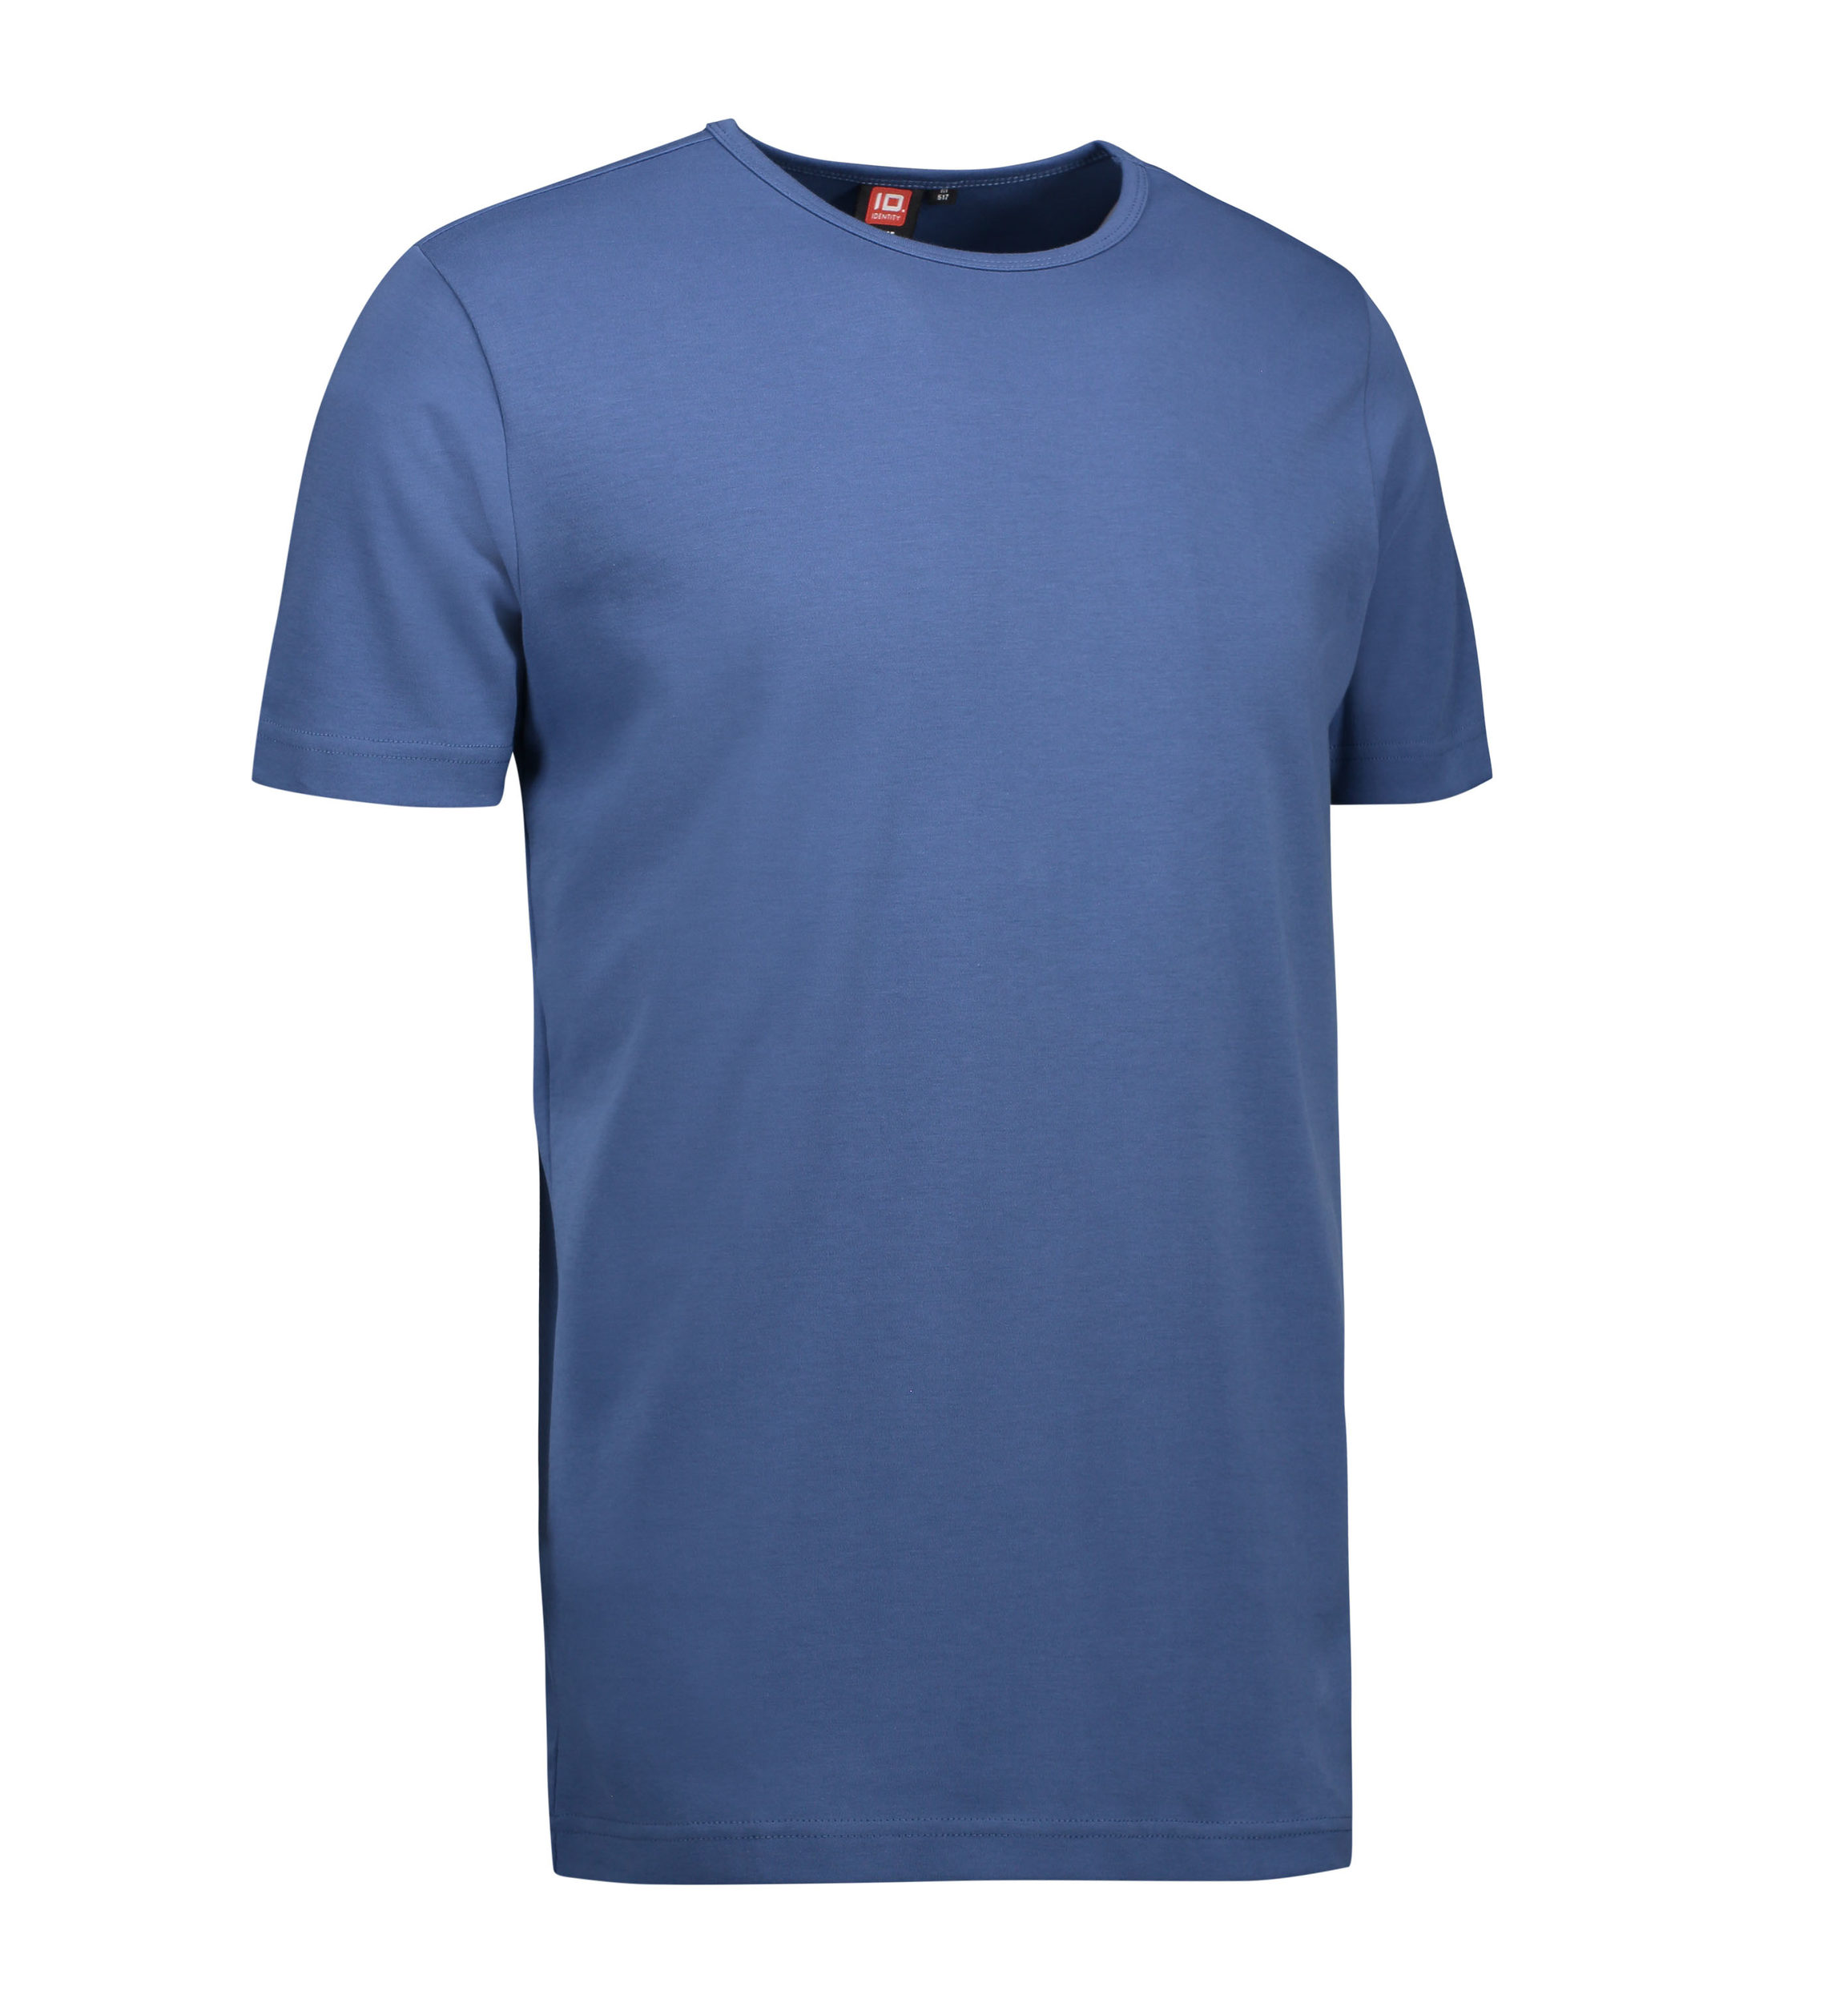 Billede af Indigo farvet t-shirt med rund hals til mænd - XL hos Sygeplejebutikken.dk